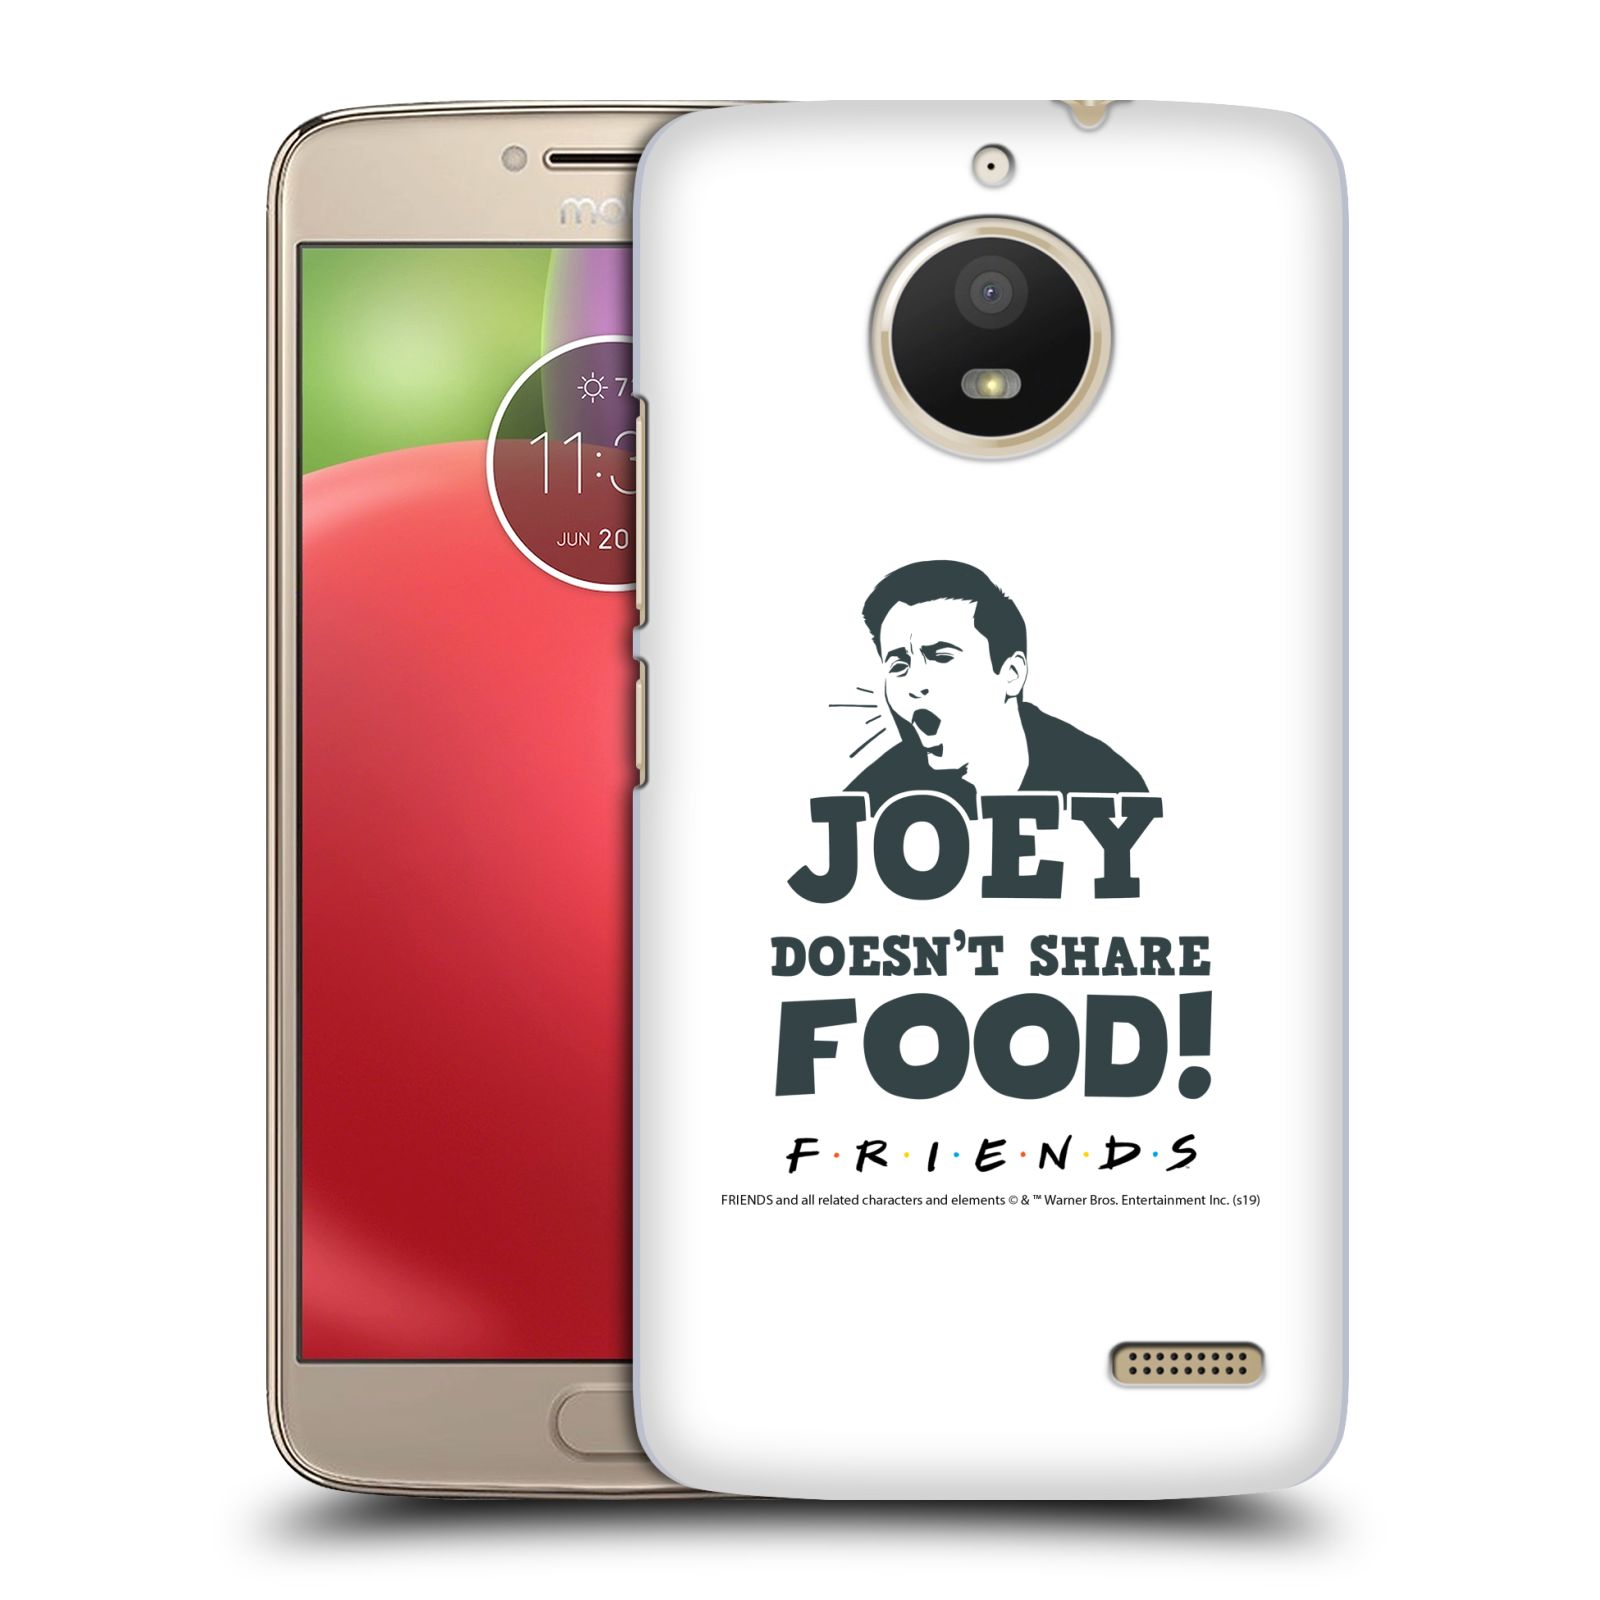 Pouzdro na mobil Lenovo Moto E4 - HEAD CASE - Seriál Přátelé - Joey se o jídlo nedělí